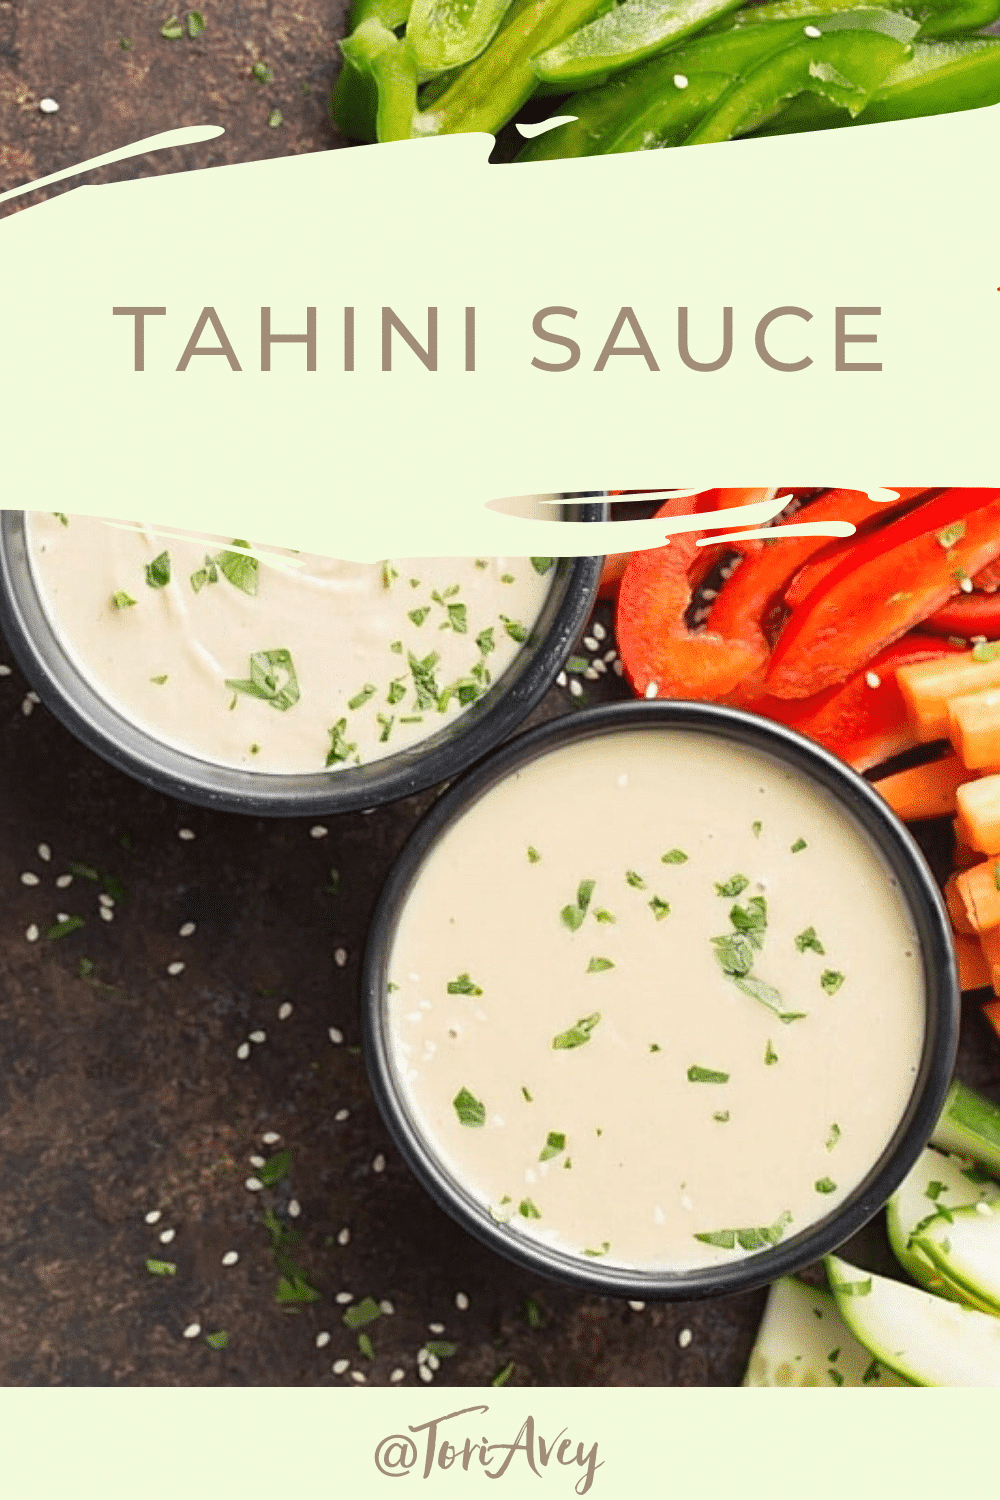 Tahini Sauce - How to Make Middle Eastern Tahini Sauce